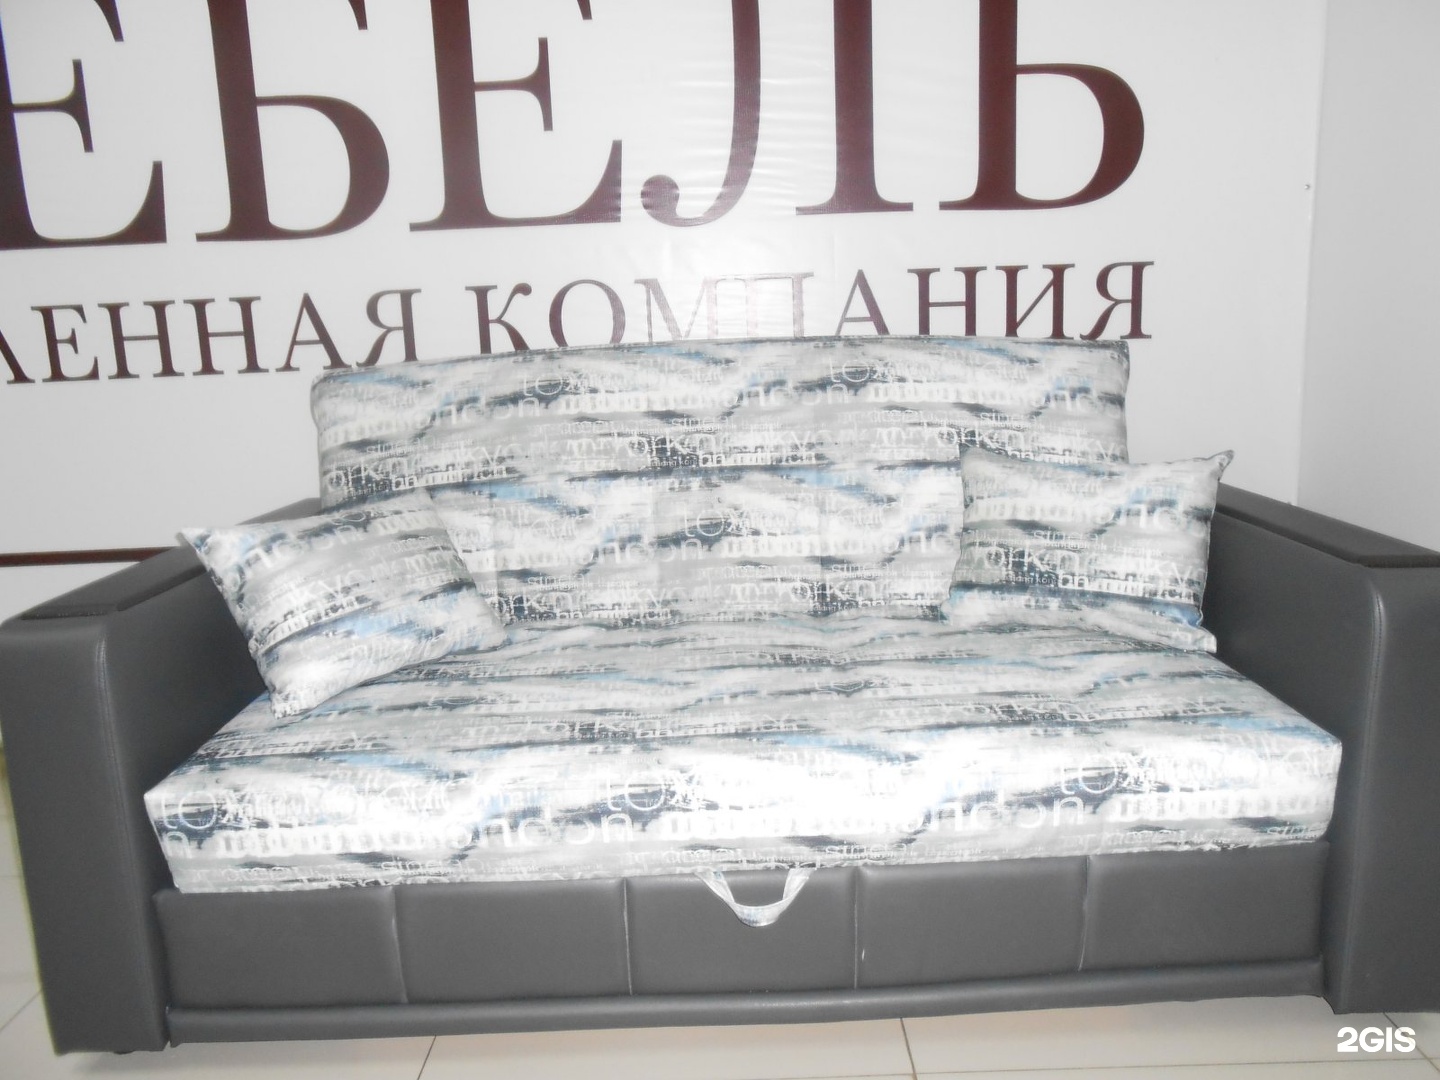 Ставрополь Михайловское шоссе 14 мебельный салон